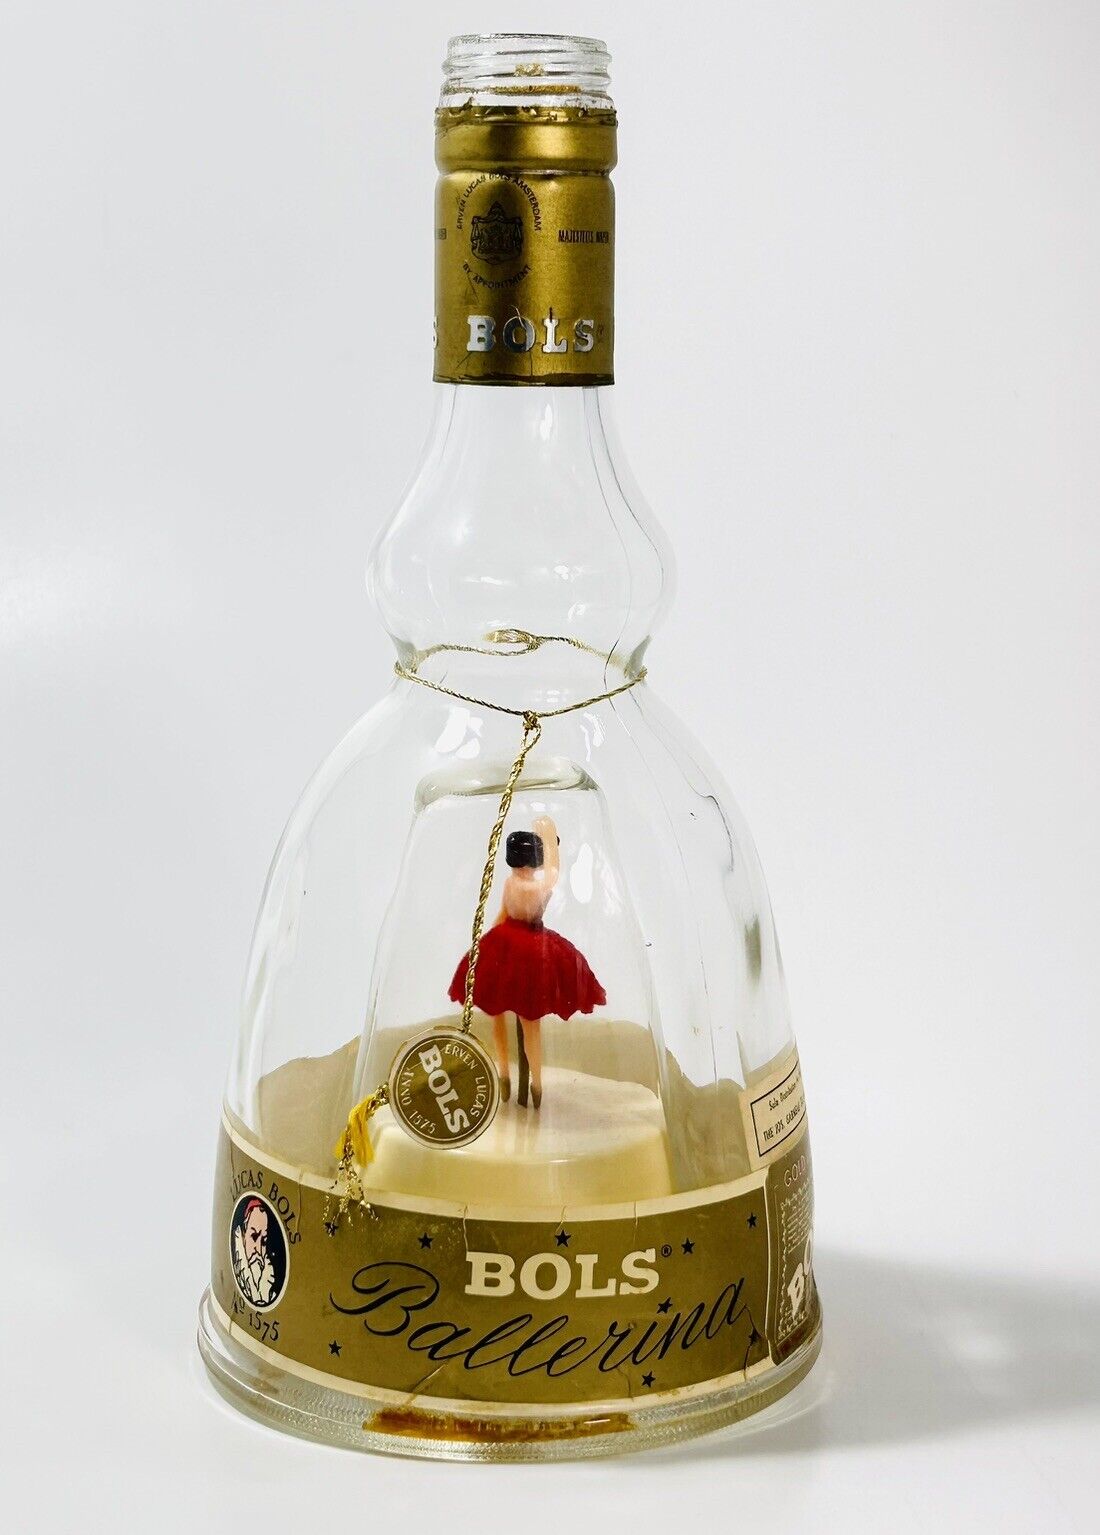 Vintage Bols Ballerina Gold Liquor Glass Bottle Music Box Red Dress Works